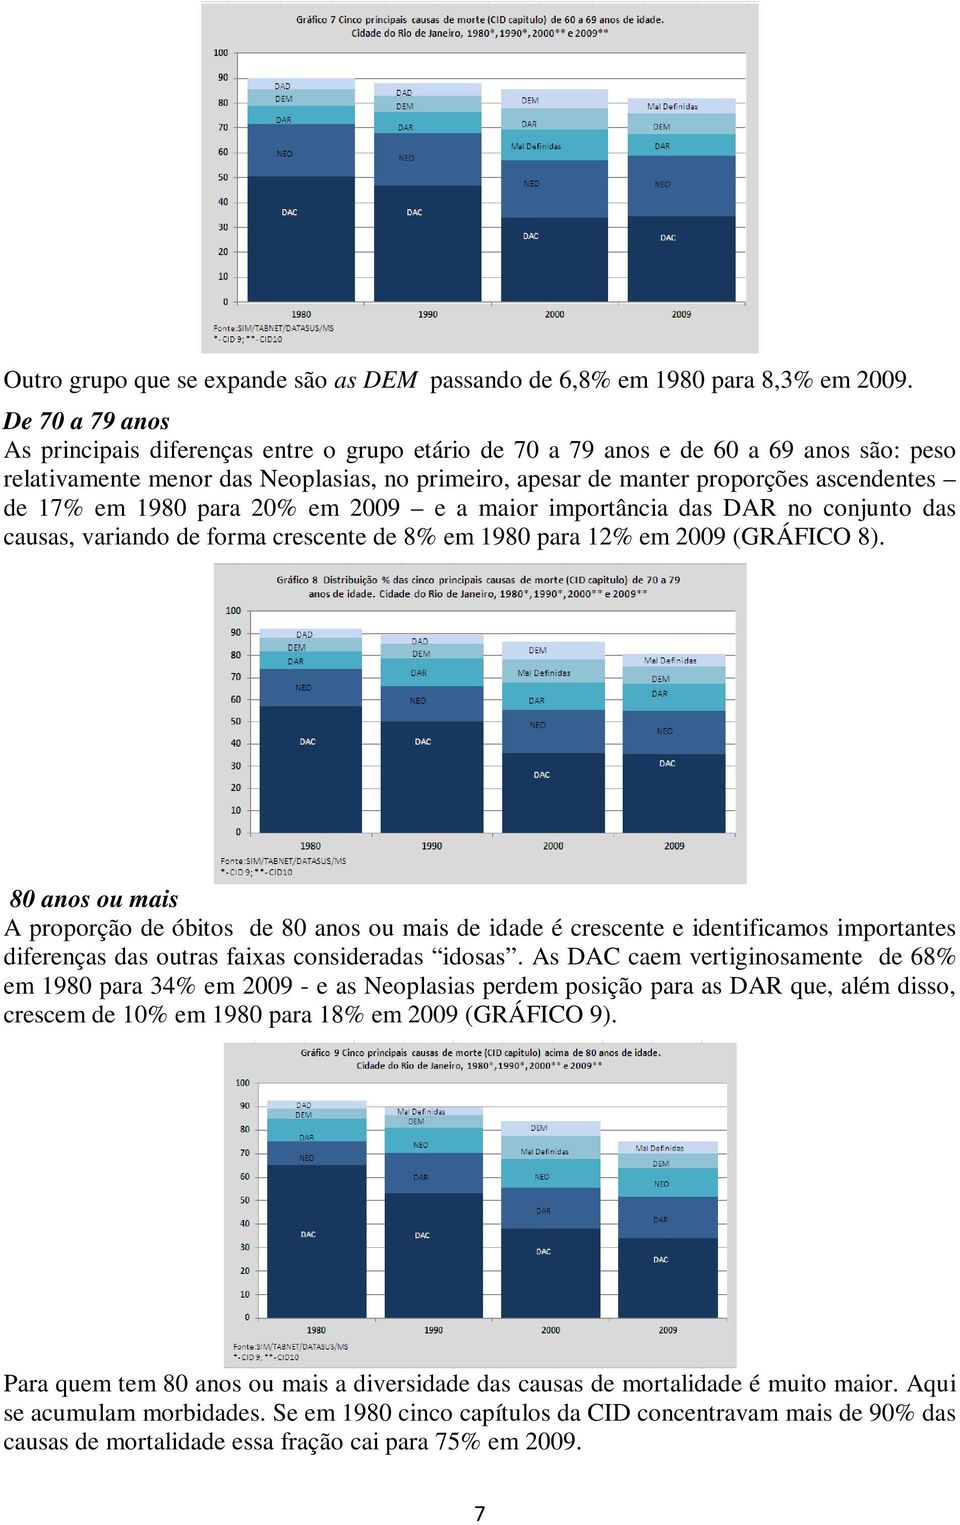 17% em 1980 para 20% em 2009 e a maior importância das DAR no conjunto das causas, variando de forma crescente de 8% em 1980 para 12% em 2009 (GRÁFICO 8).